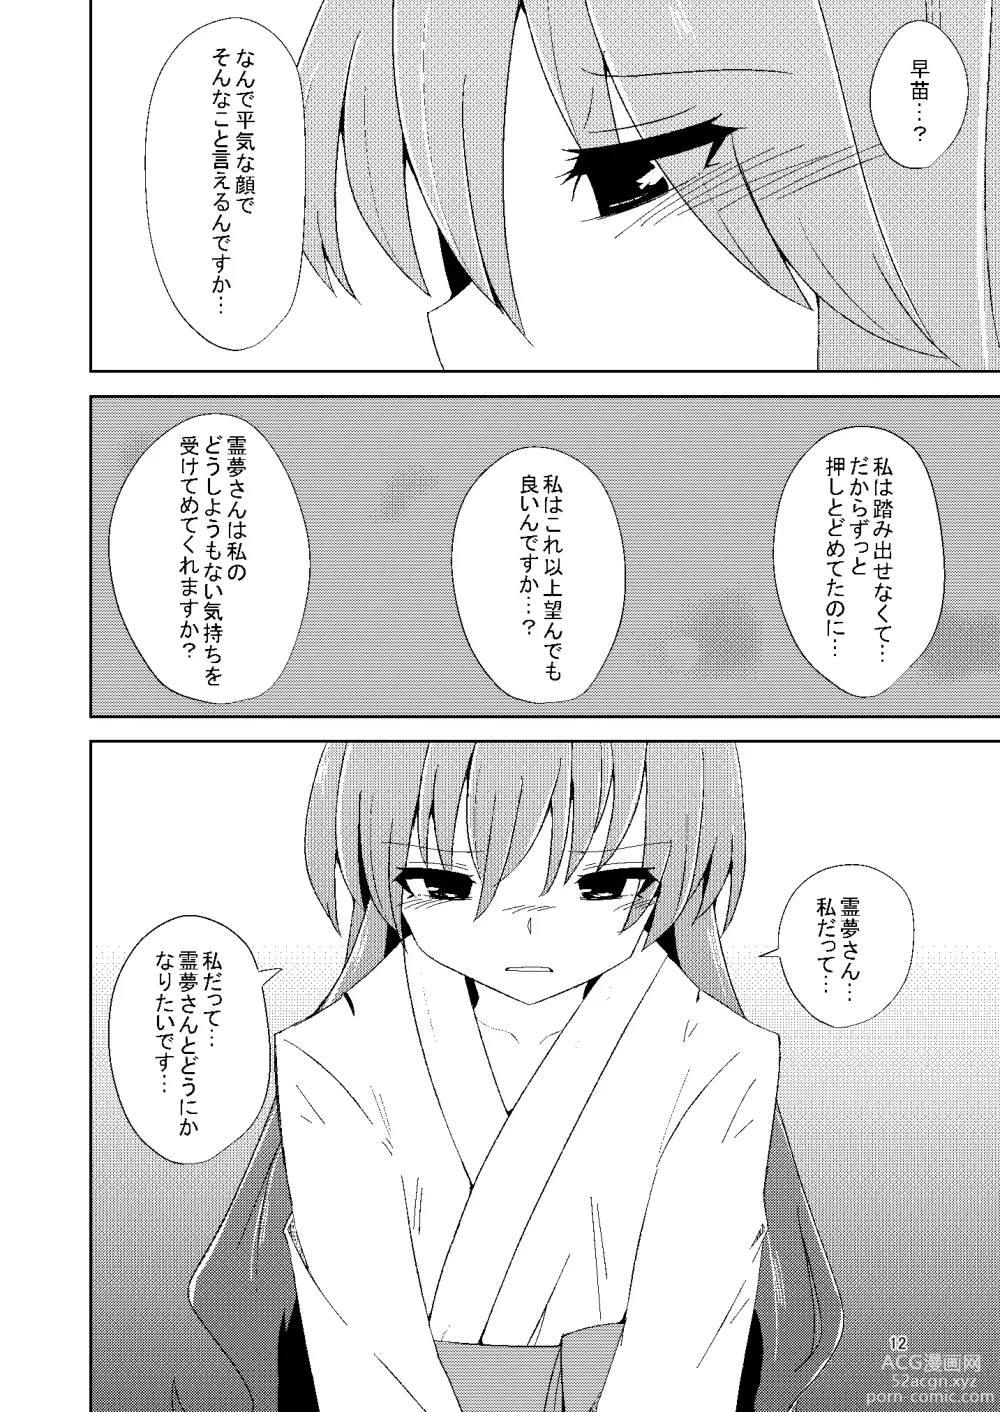 Page 11 of doujinshi Onaji desu ne